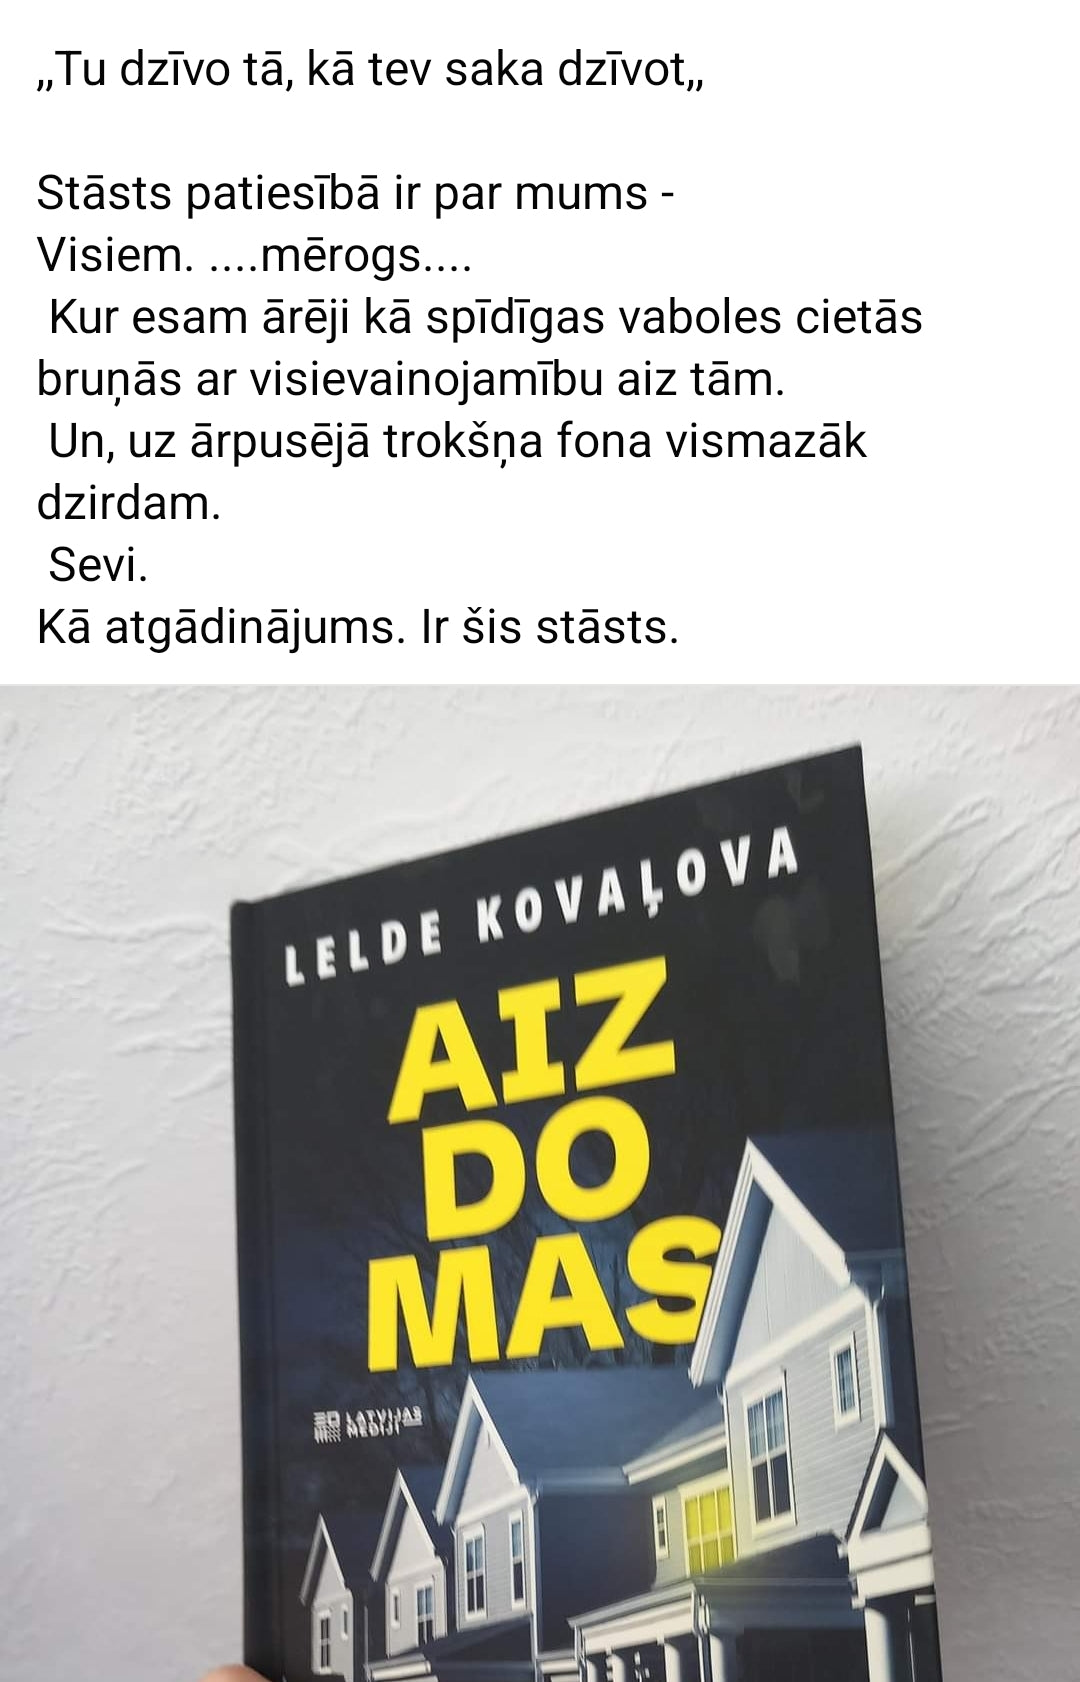 Leldes Kovaļovas jaunais romāns "AIZDOMAS".